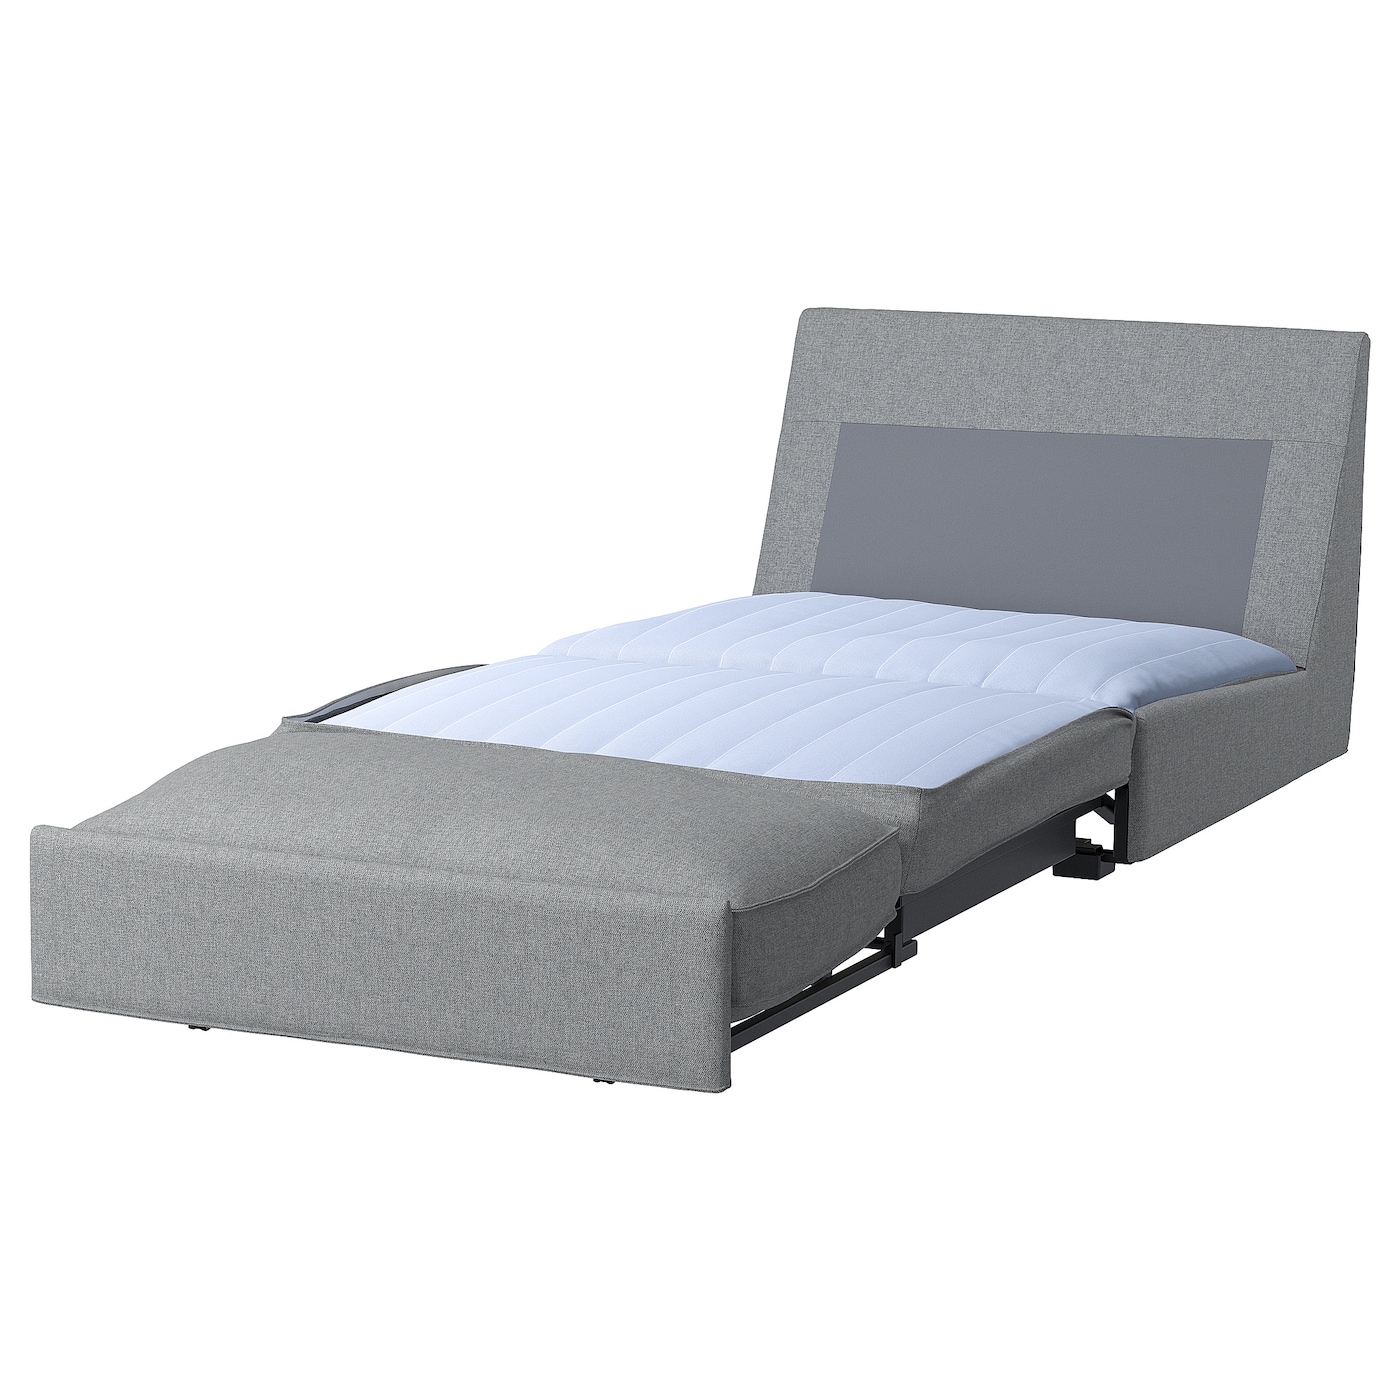 КИВИК 1-местный диван-кровать, Тибблби бежевый/серый KIVIK IKEA уличный портативный надувной диван пляжная кровать ленивая популярная кровать с подушкой кровать для кемпинга воздушная кровать шезлон